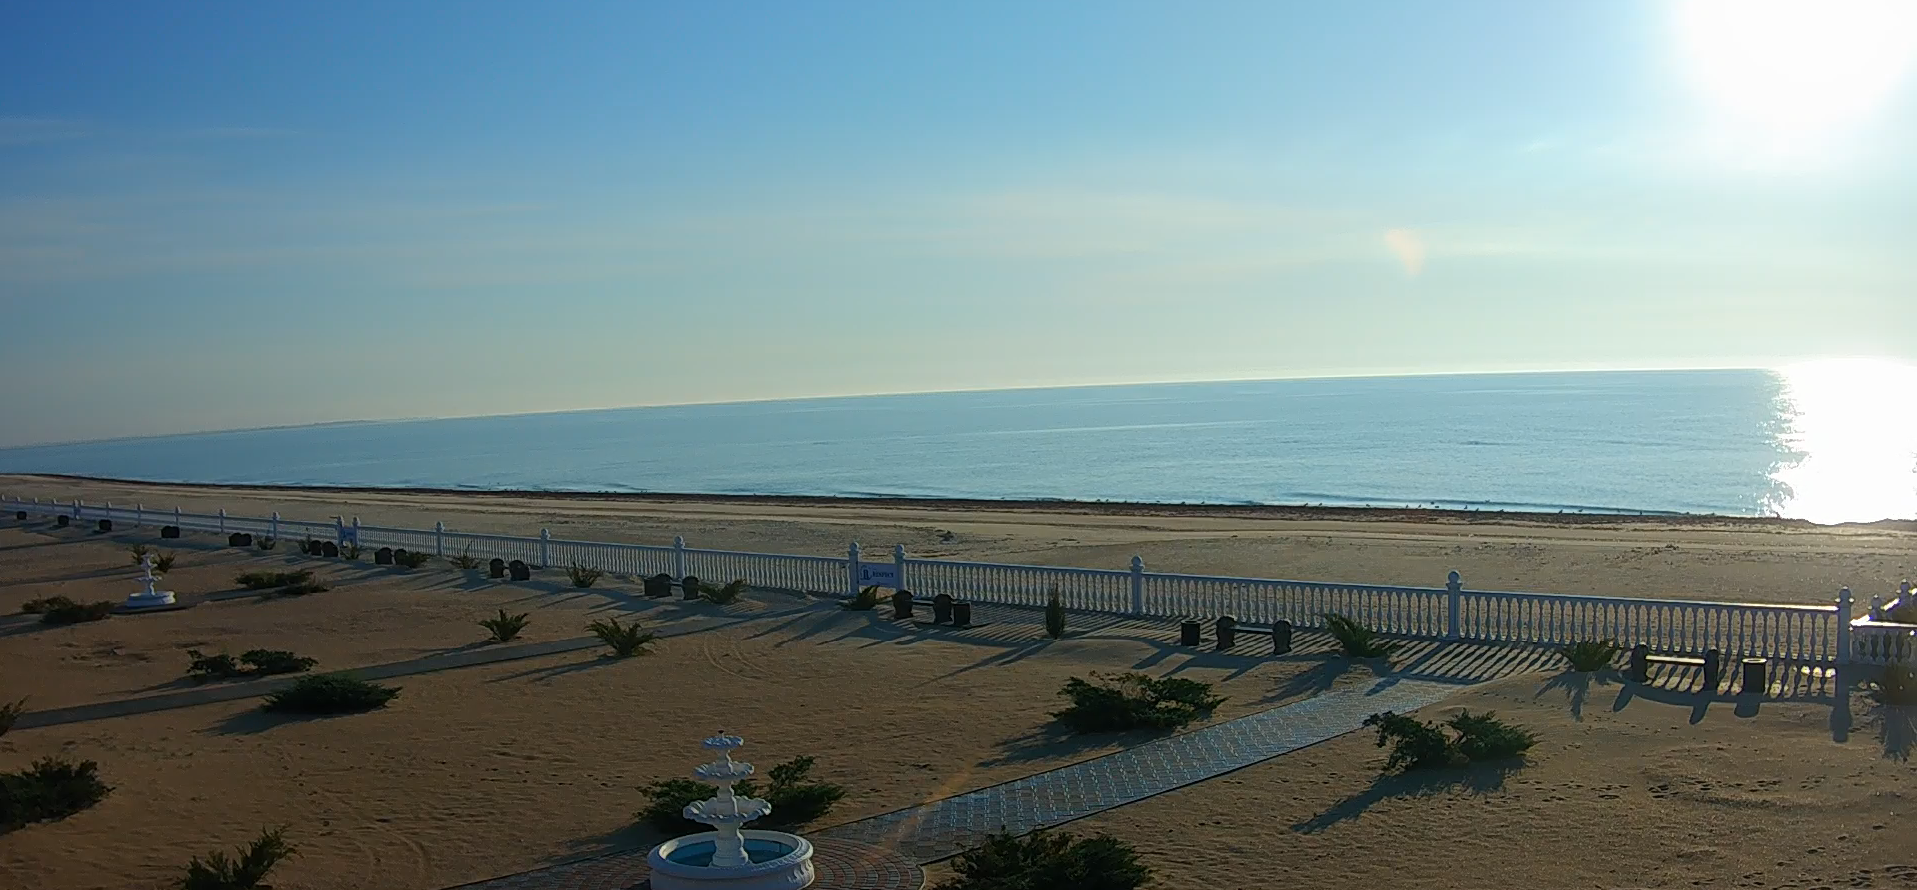 Огромное солнце и голубая лазурь: пустынные пляжи Кирилловки продолжают радовать глаз (ФОТО)